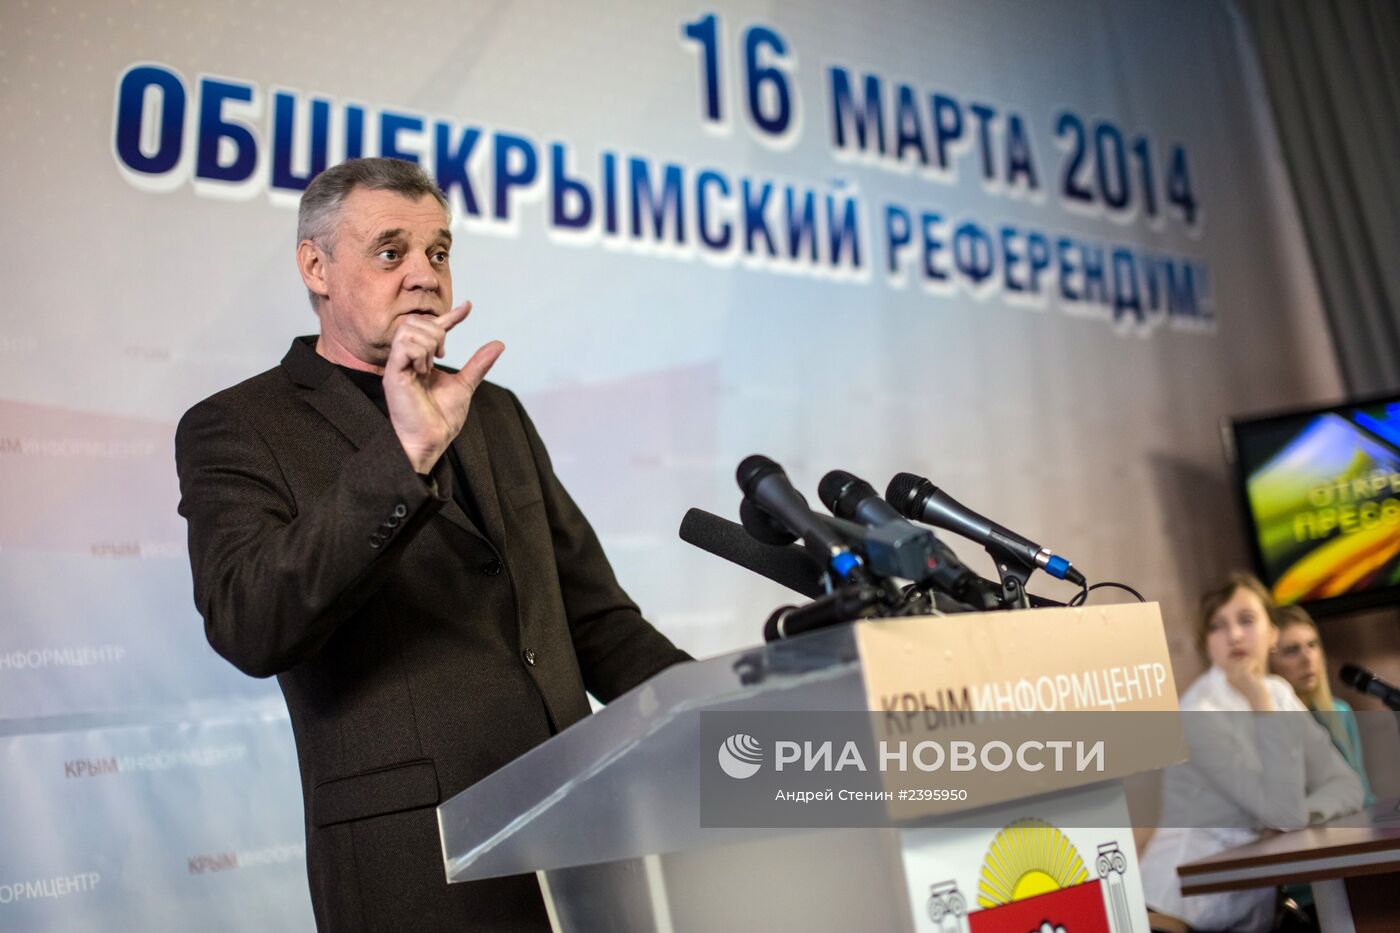 Глава ИК по проведению референдума о статусе Крыма М.Малышев дал пресс-конференцию